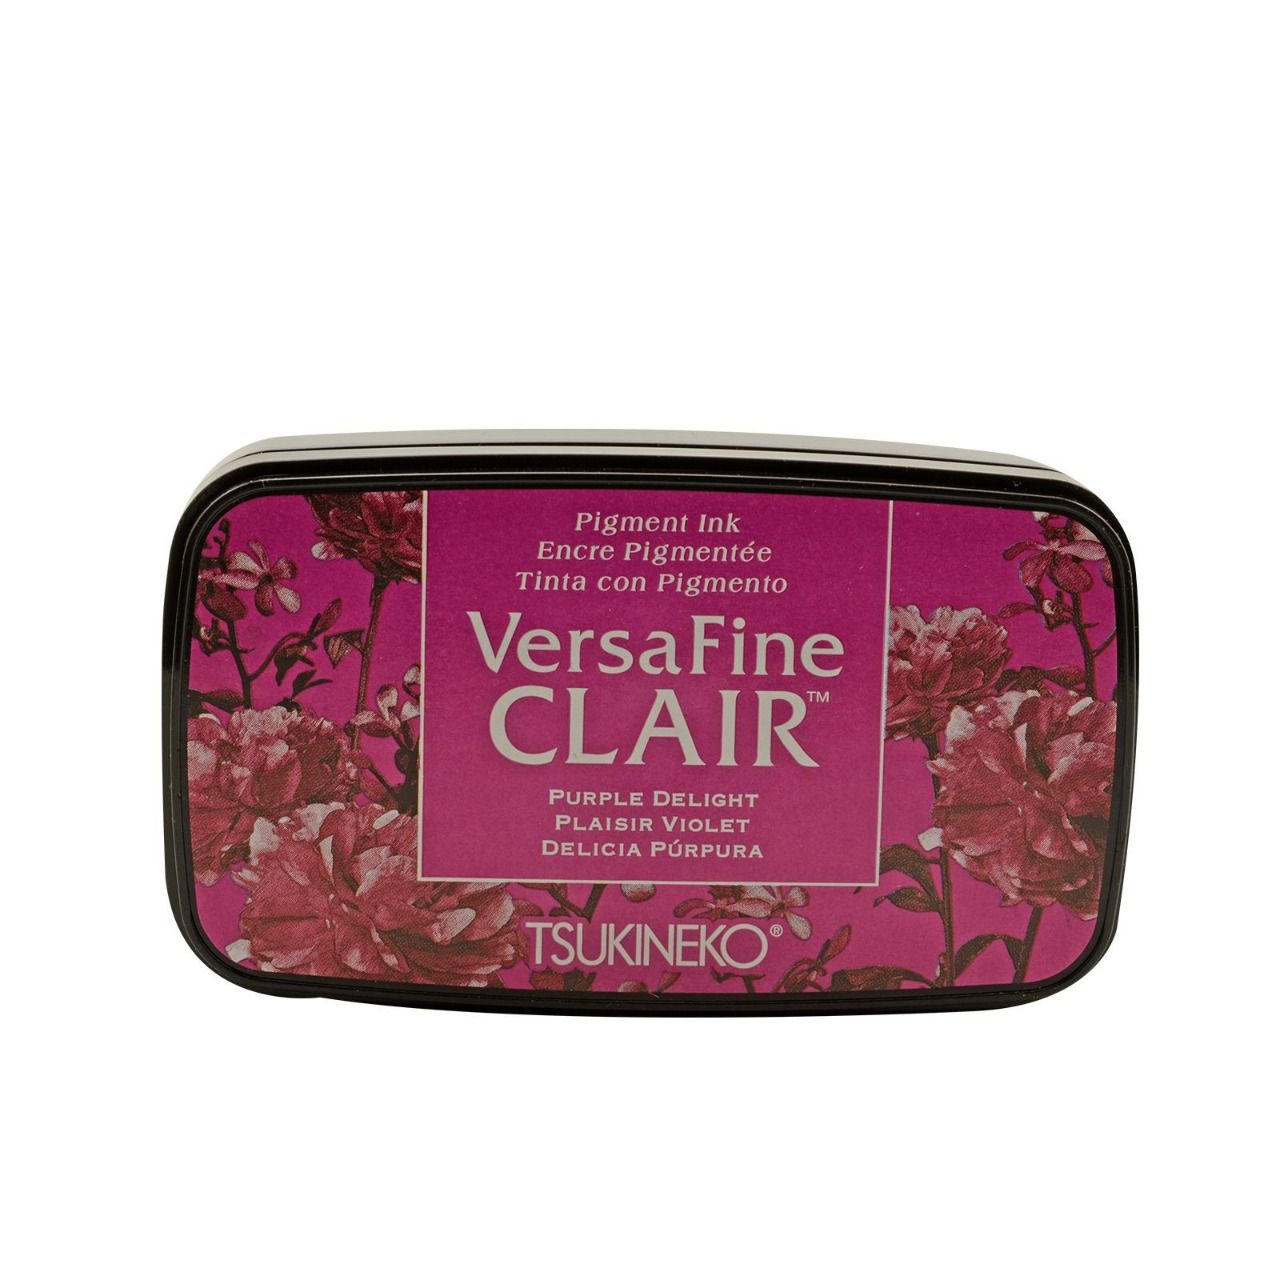 Versafine CLAIR - Plaisir Violet